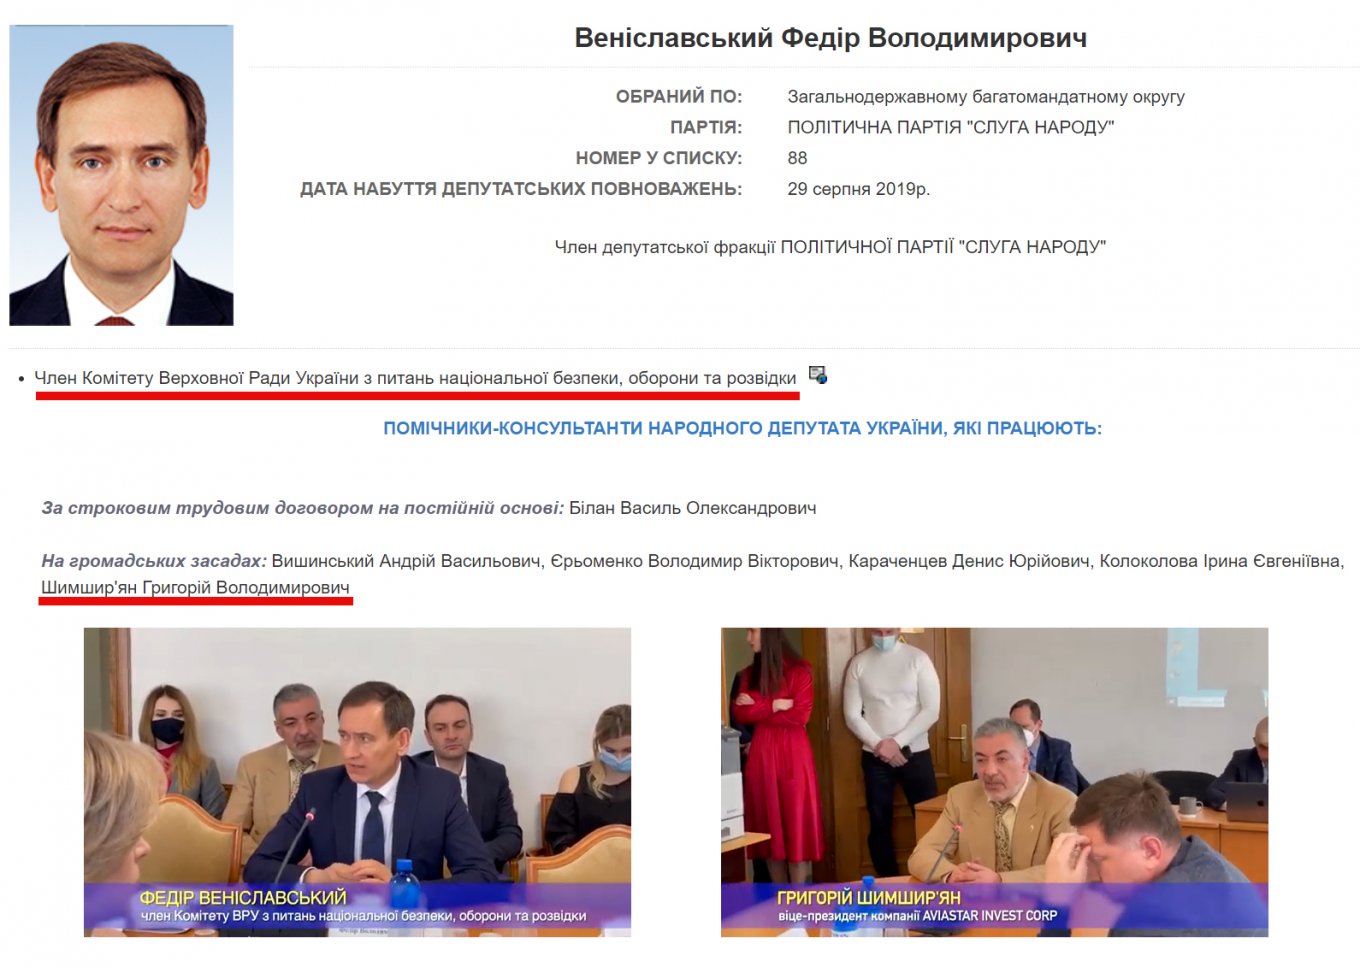 Представник американської сторони Григорій Шимшир’ян є громадянином України